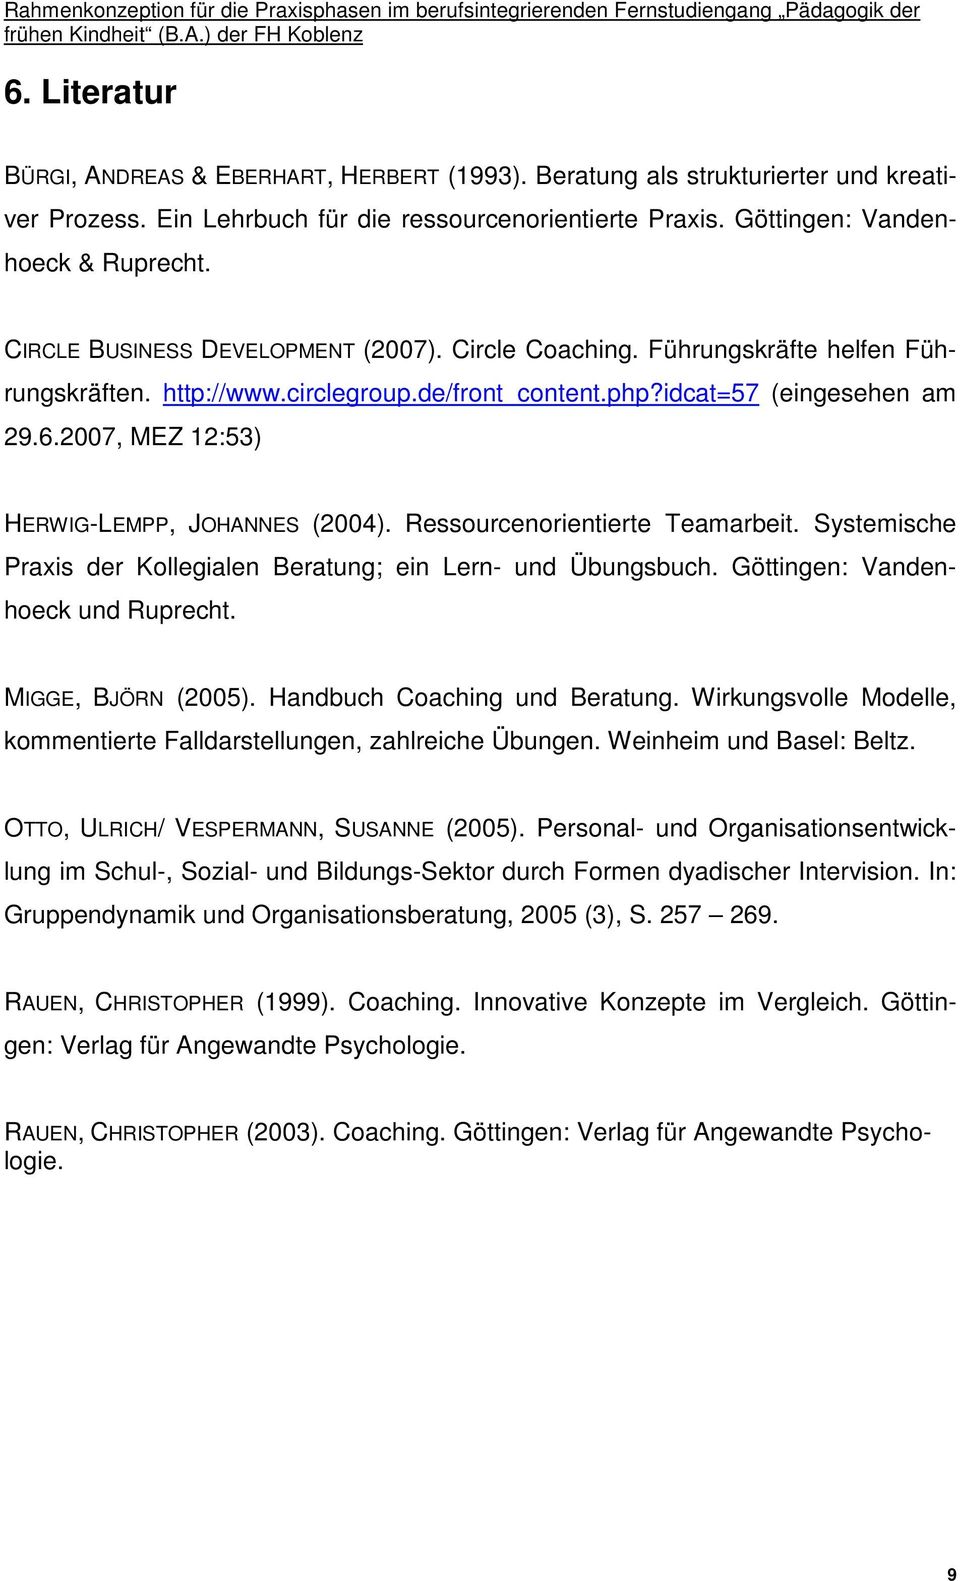 2007, MEZ 12:53) HERWIG-LEMPP, JOHANNES (2004). Ressourcenorientierte Teamarbeit. Systemische Praxis der Kollegialen Beratung; ein Lern- und Übungsbuch. Göttingen: Vandenhoeck und Ruprecht.